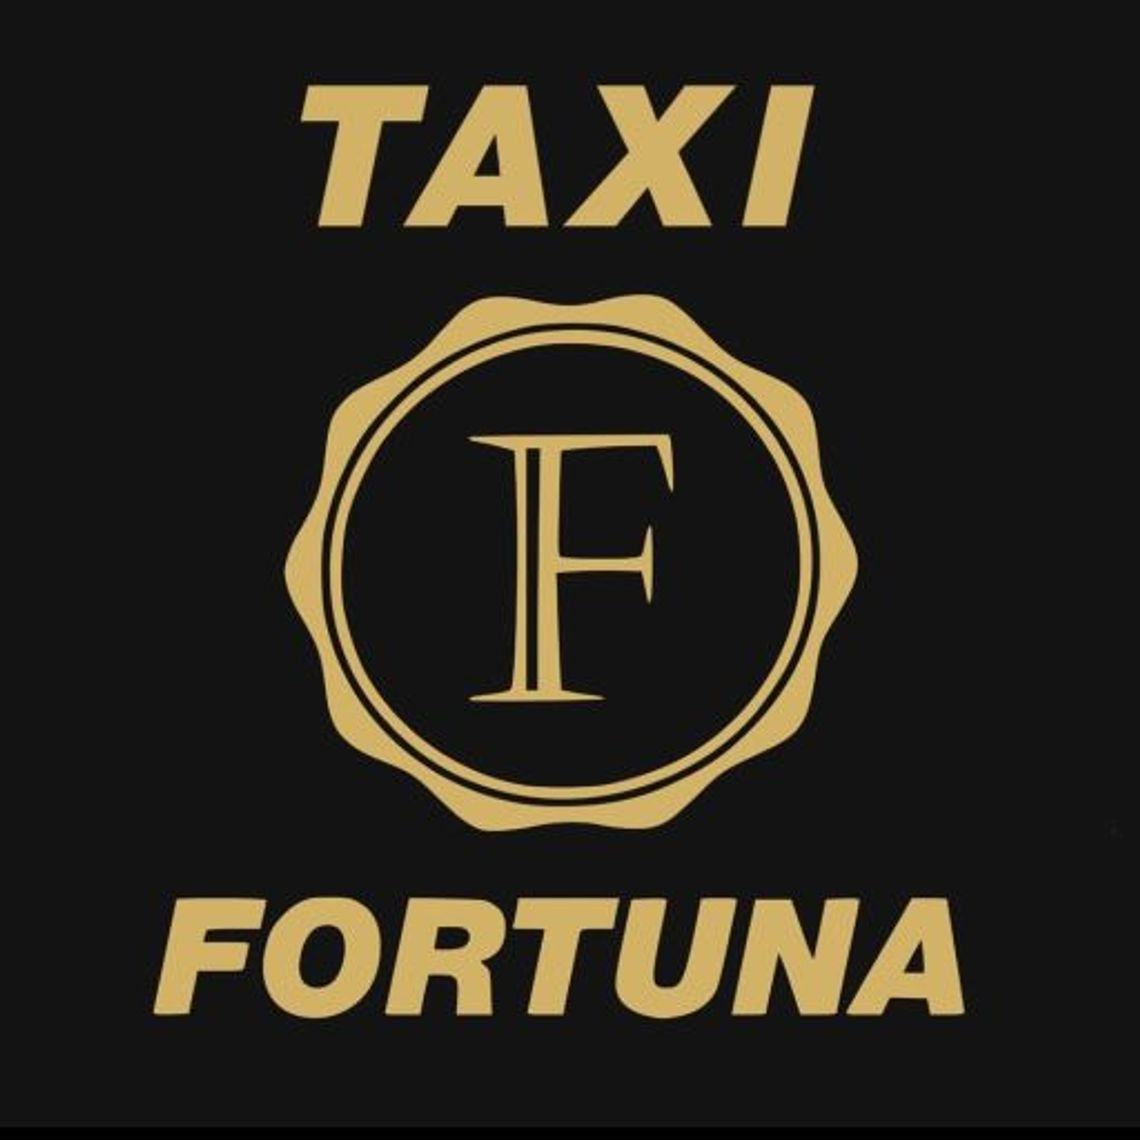 Taxi Fortuna - taxi w Łodzi w dobrej cenie.